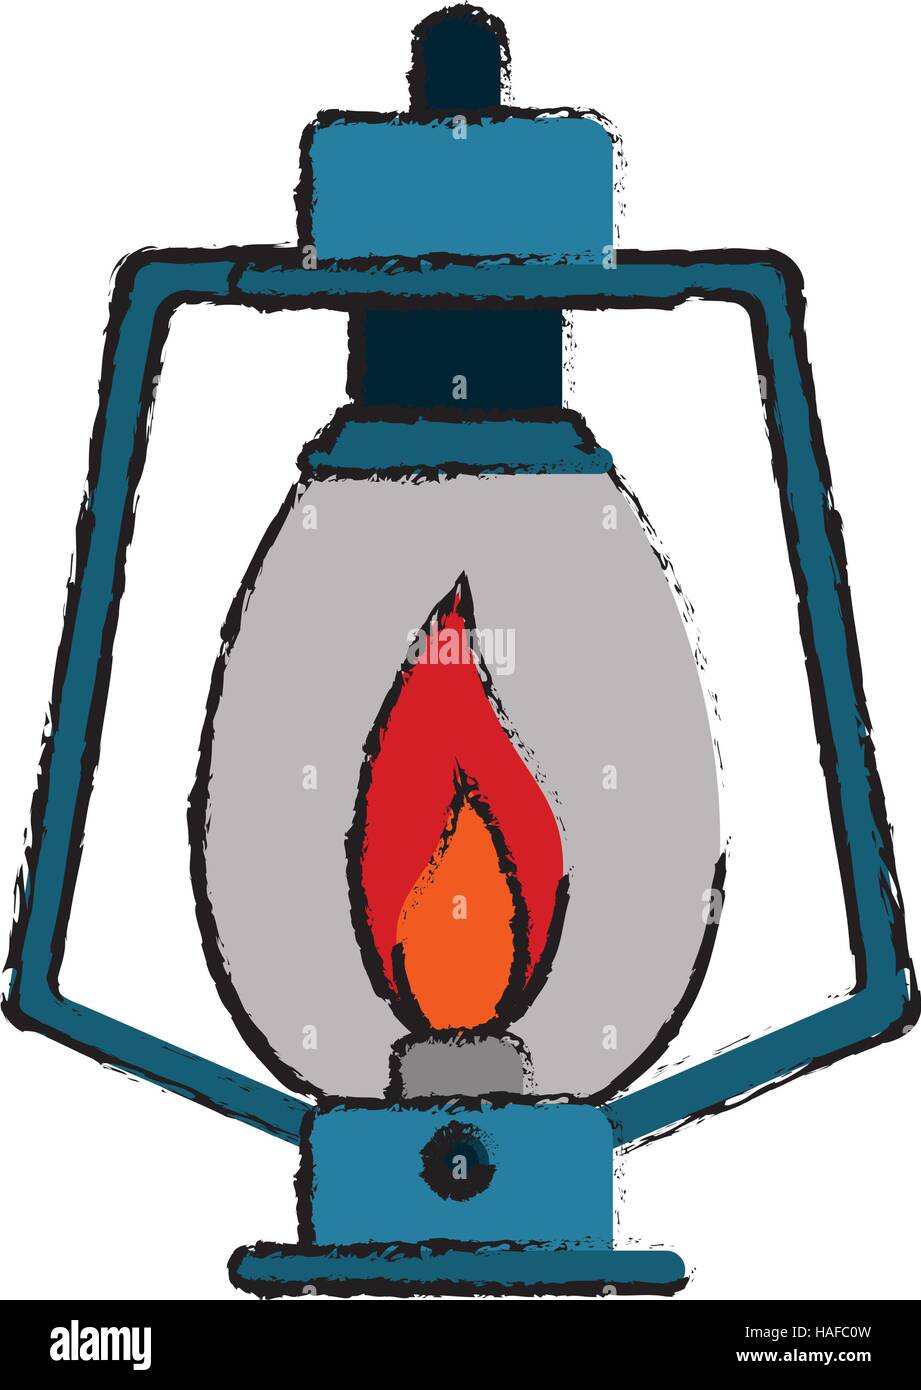 Lampada di disegno kerosene vecchia lanterna camping Immagine e Vettoriale  - Alamy